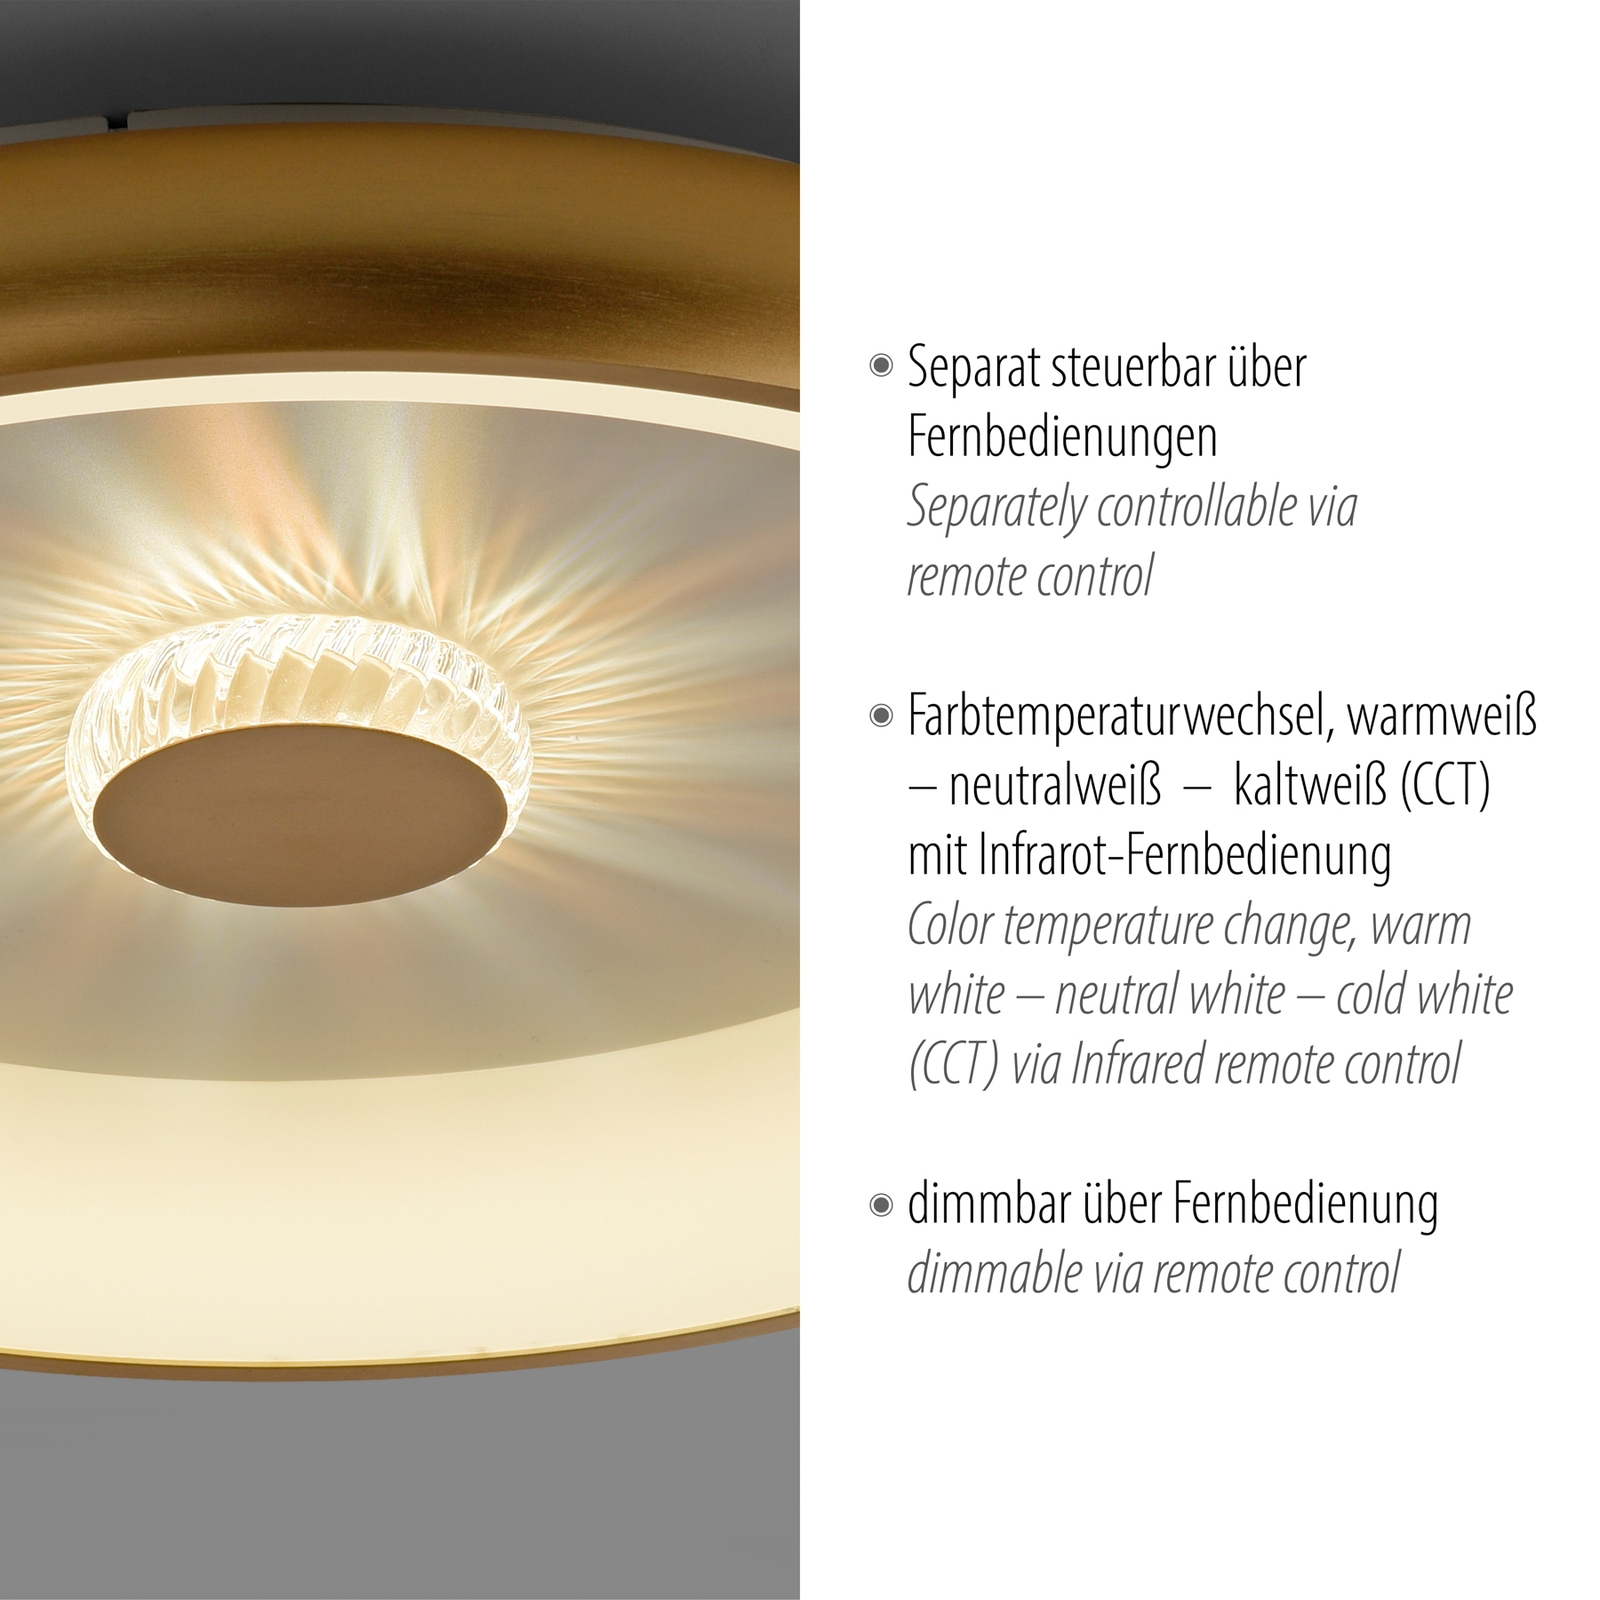 Vertigo LED mennyezeti lámpa, CCT, Ø 61,5 cm, sárgaréz